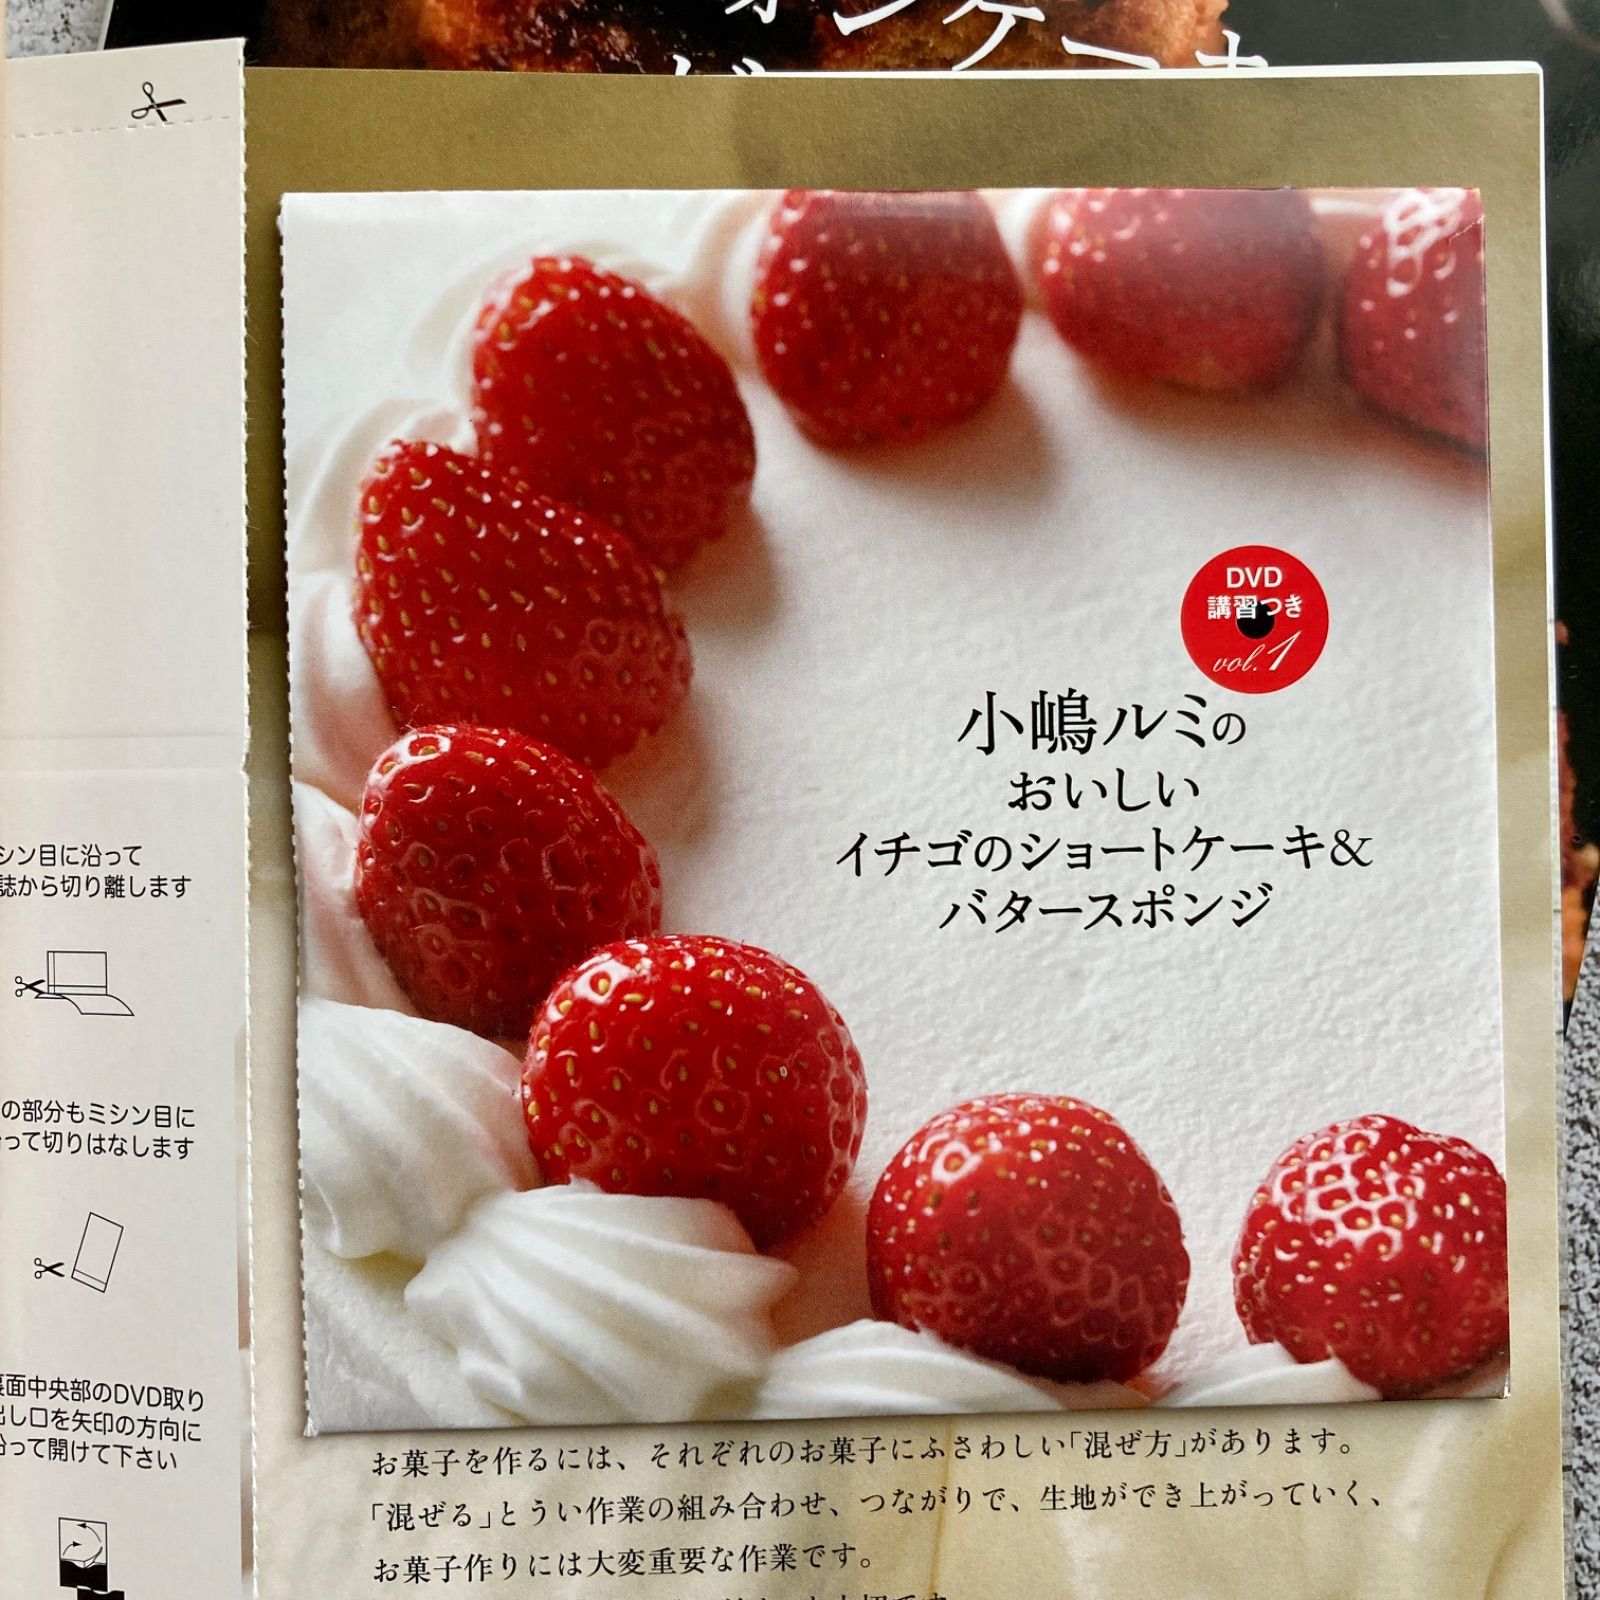 小嶋ルミのおいしいイチゴのショートケーキ&バタースポンジ 他2冊 